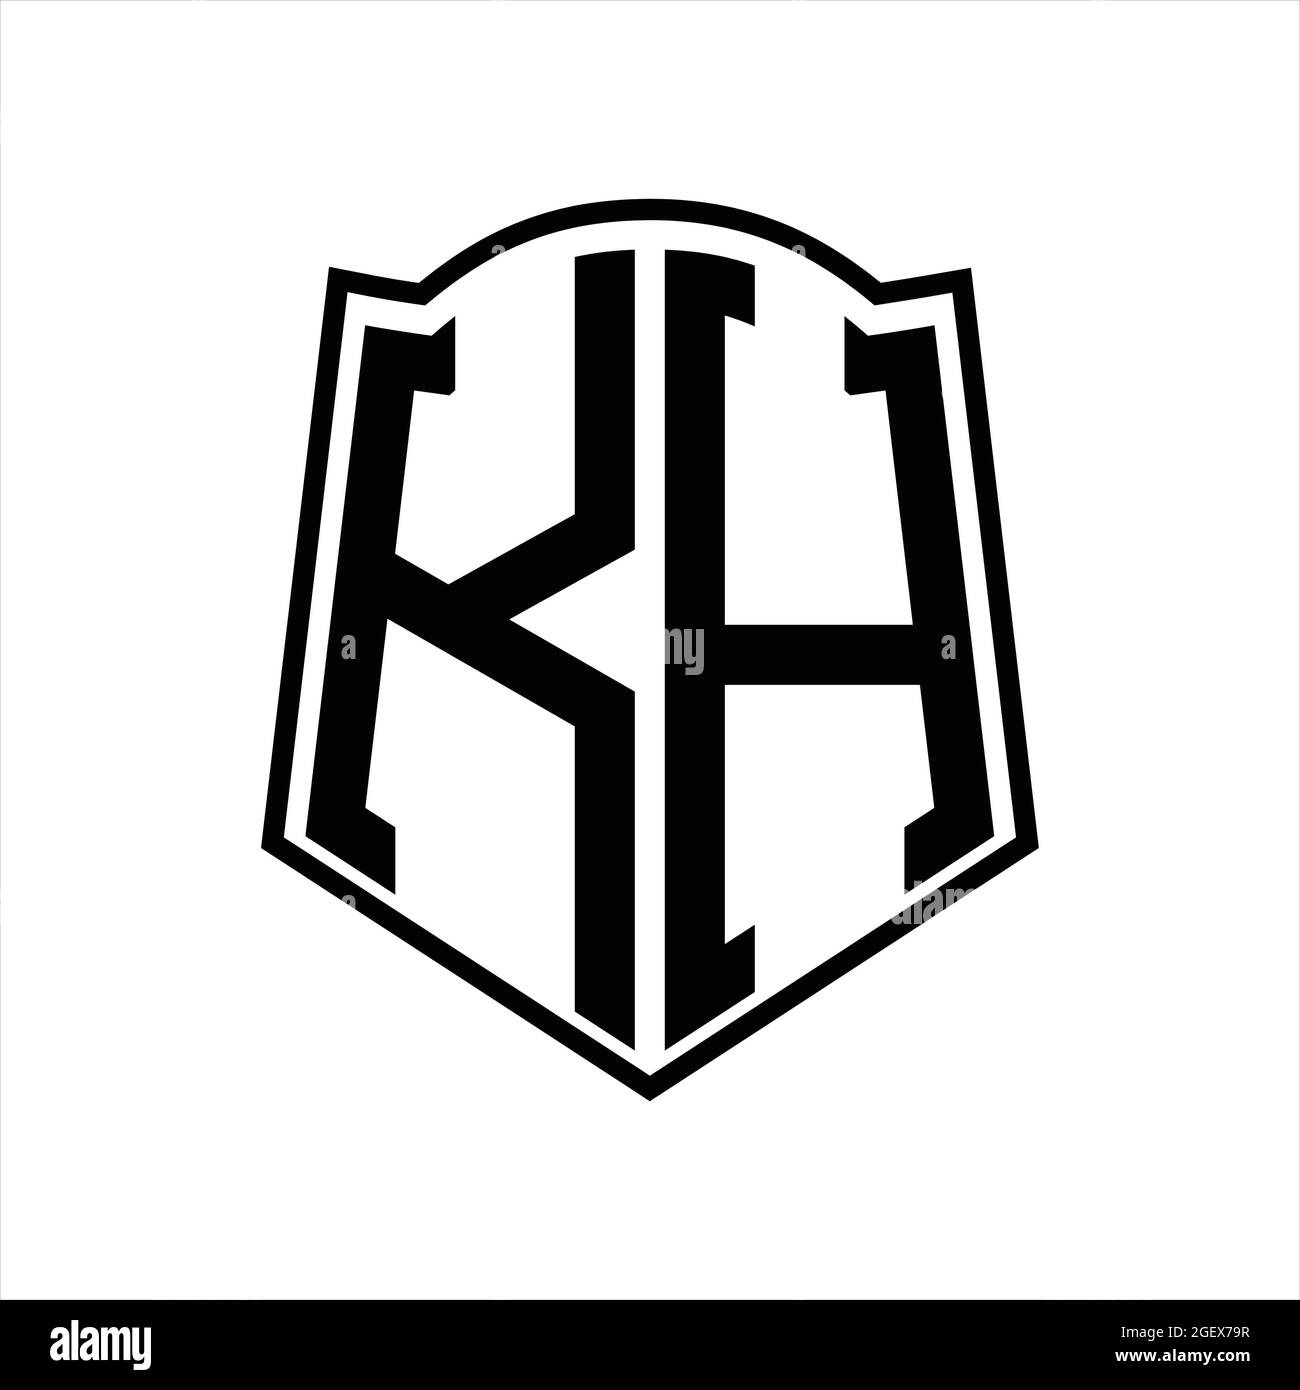 KH Logo monogram with shield shape isolated black background design ...